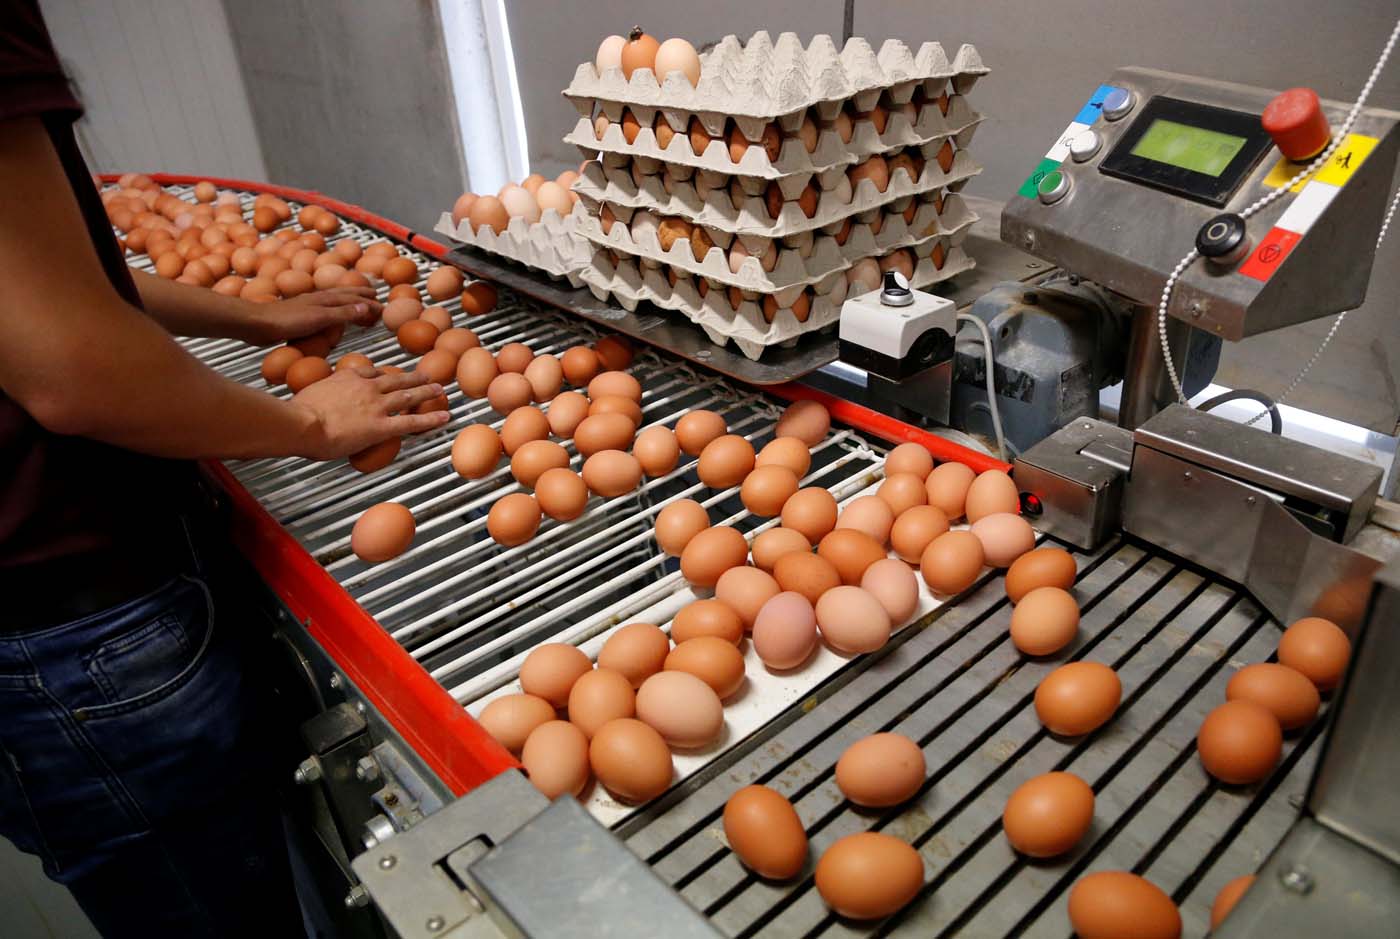 Francia reconoce la venta de huevos contaminados pero descarta peligro humano